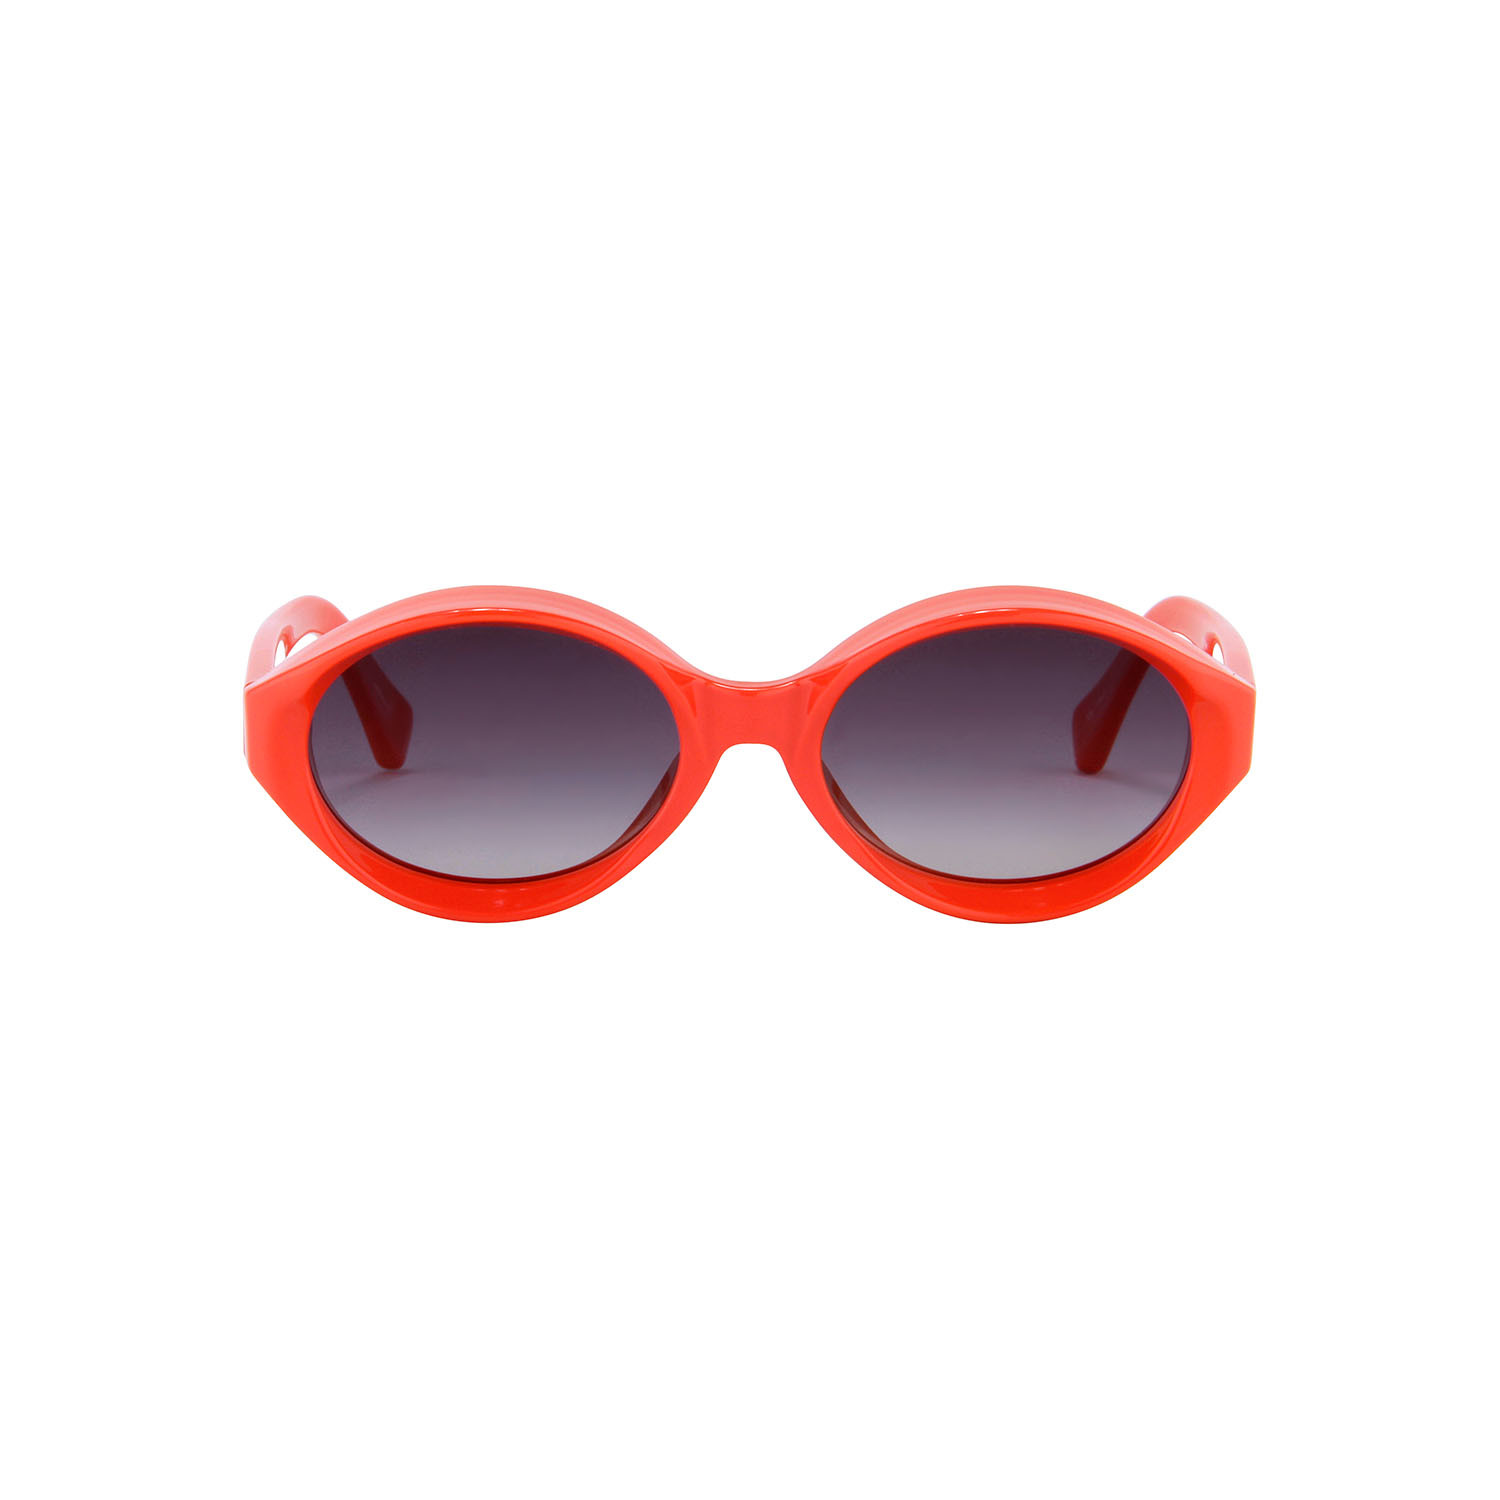 Unisex Visor Sunglasses // Red - Jeremy Scott - Touch of Modern